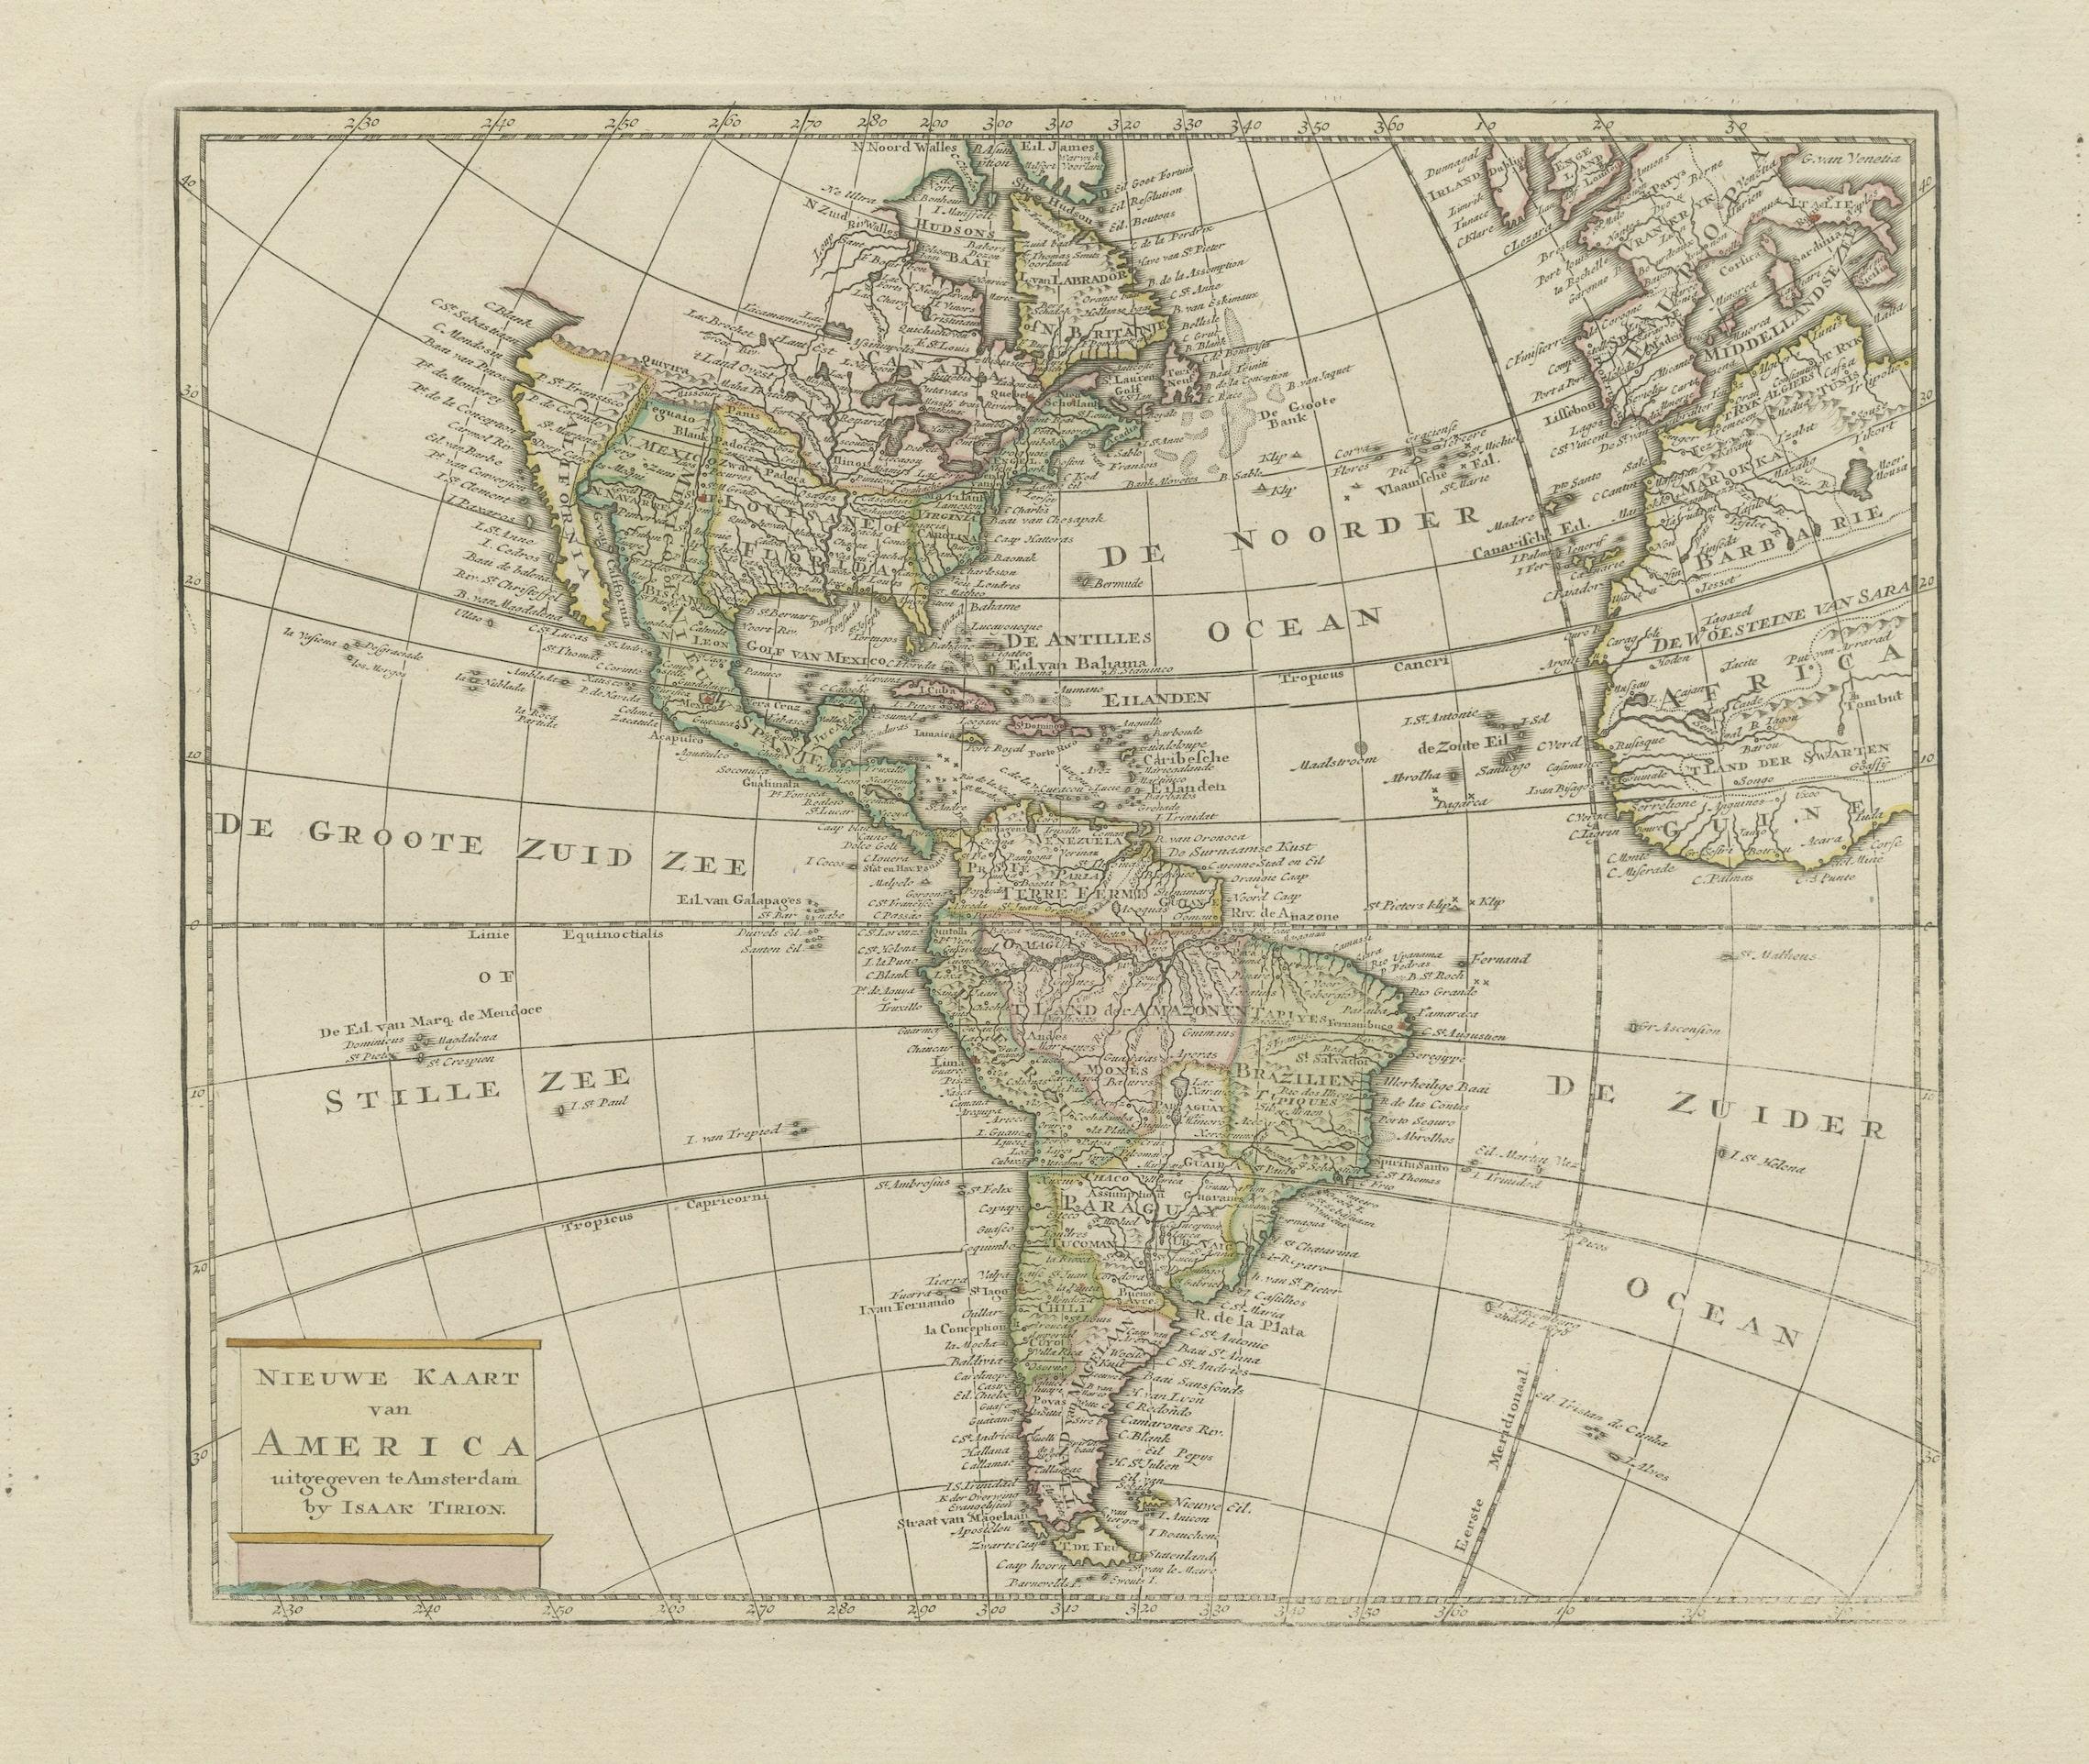 Antike Karte mit dem Titel 'Nieuwe Kaart van America'. Schöne Karte von Amerika. Die sagenumwobene Quivira ist die Bezeichnung für eine große Gebirgskette nördlich von Mexiko. Herausgegeben von I. Tirion, um 1750. 